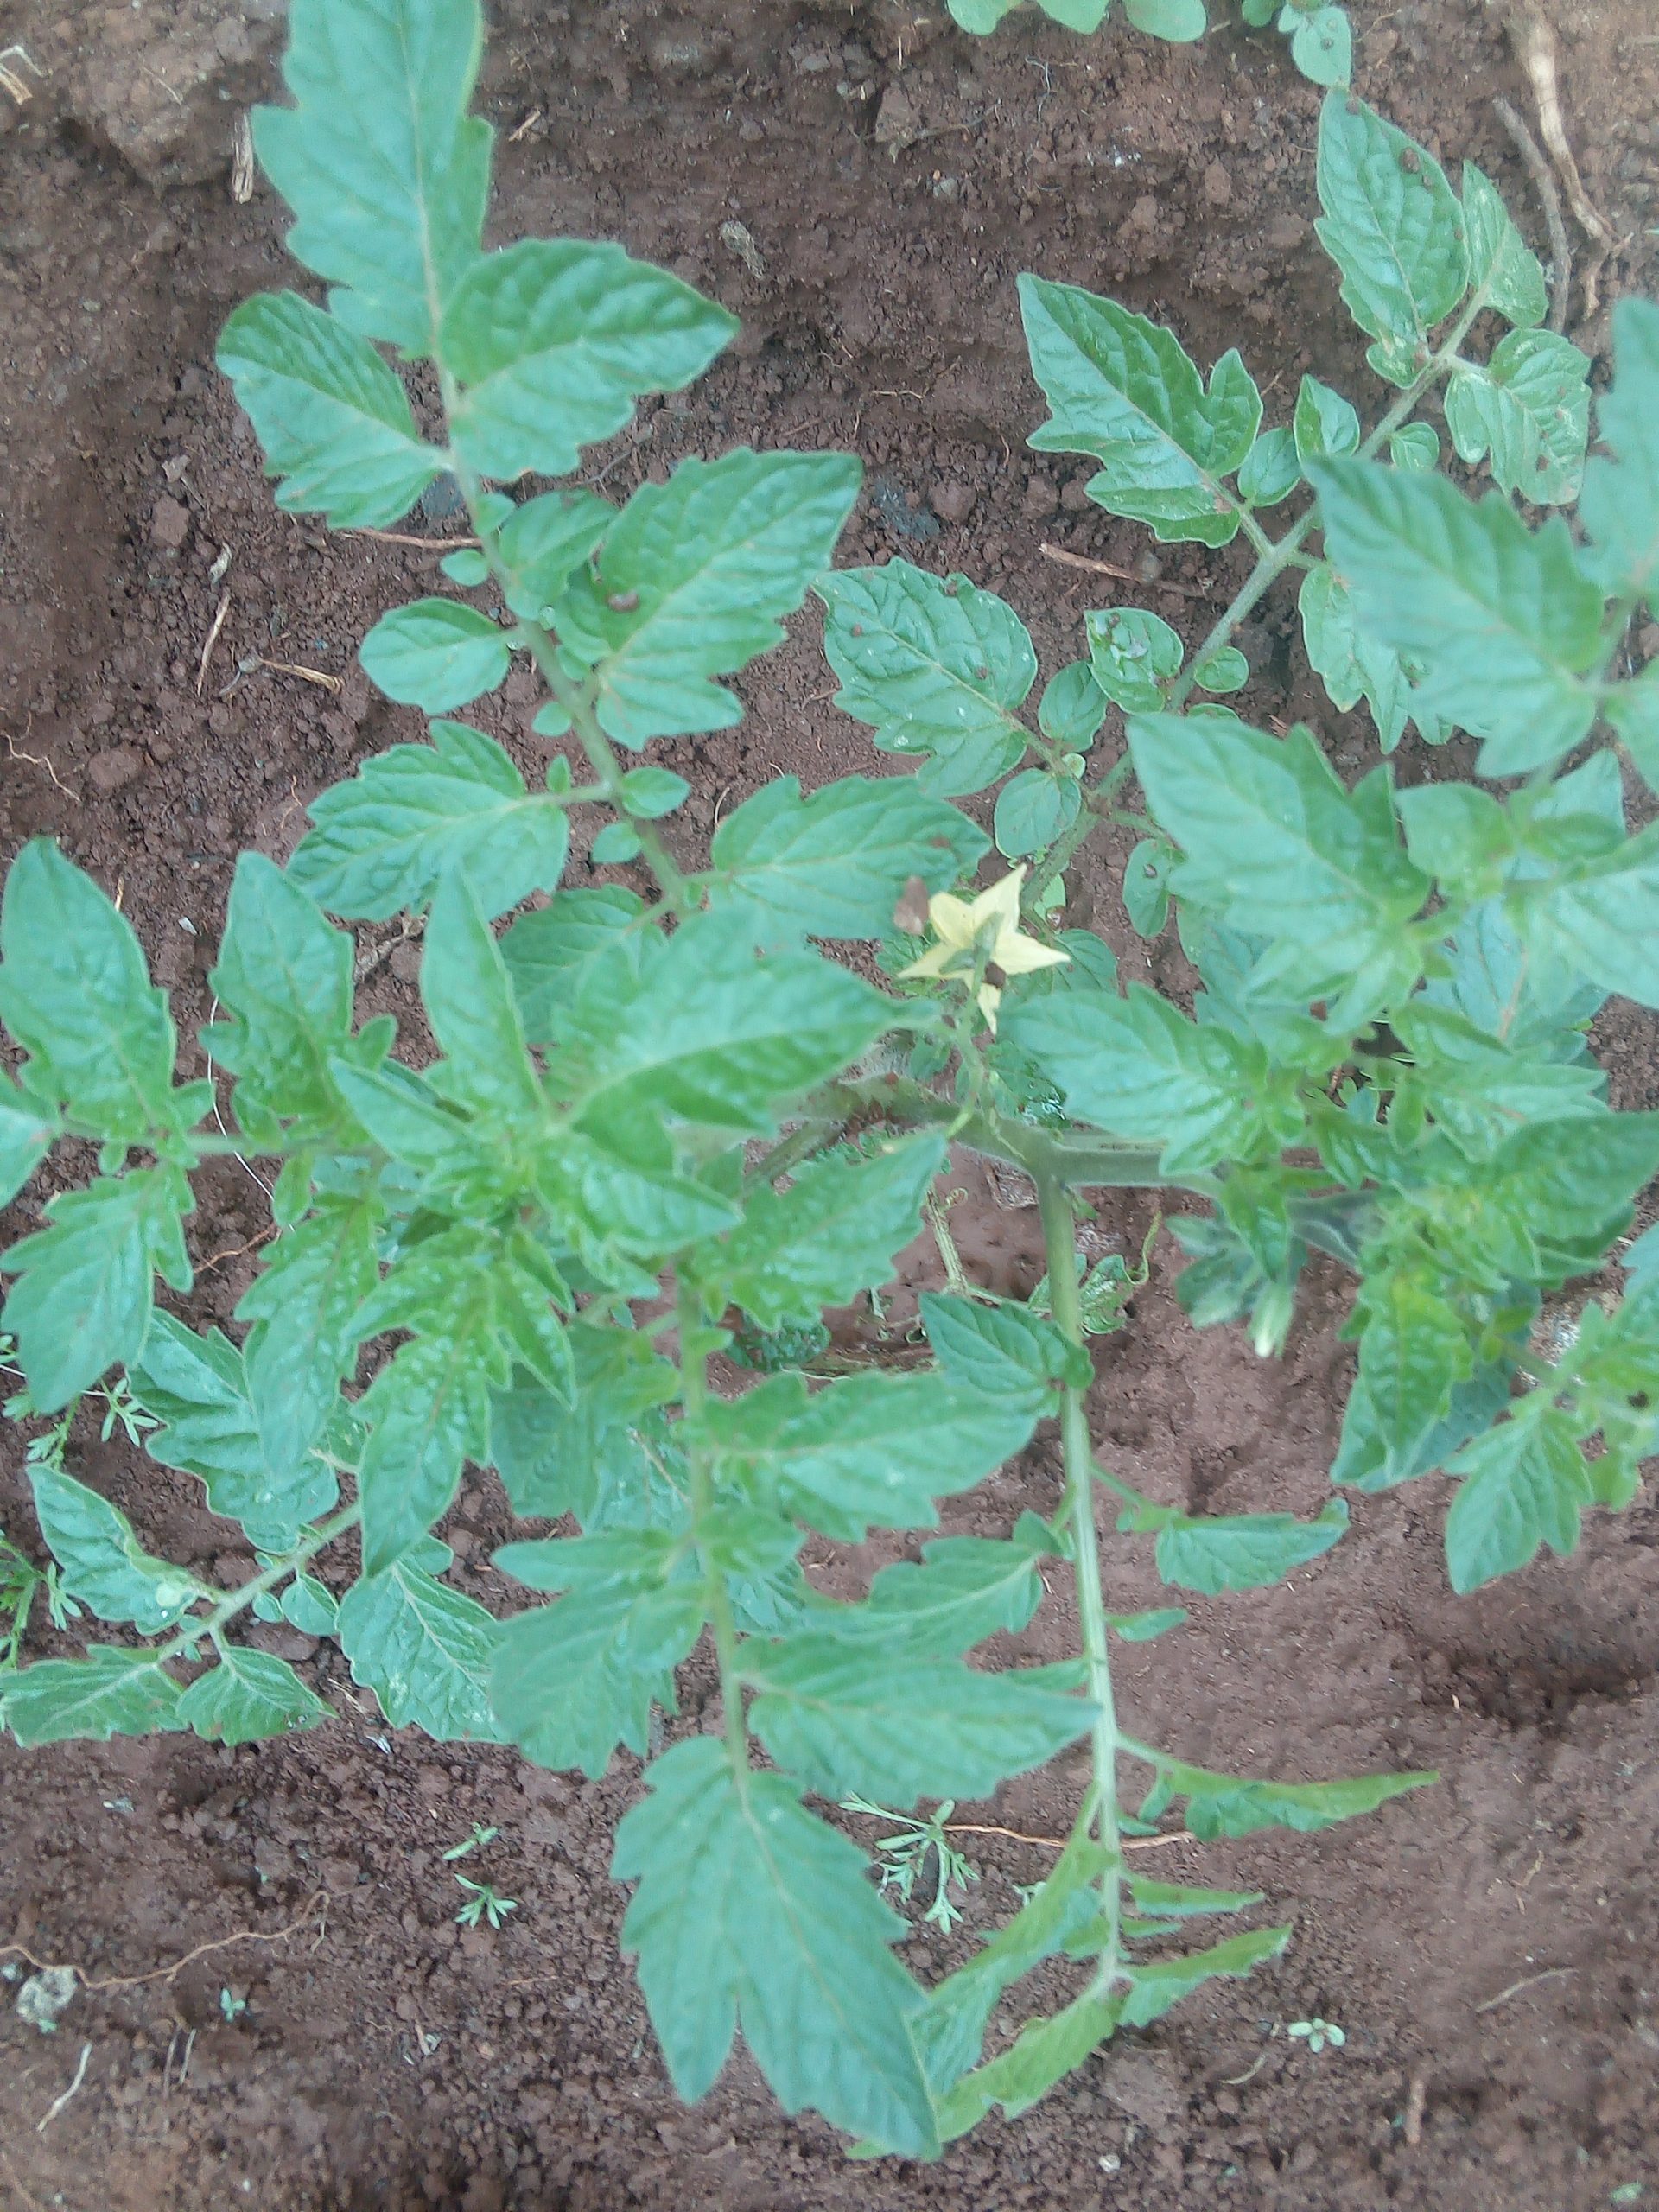 Healthy tomatoes planting in Kenya